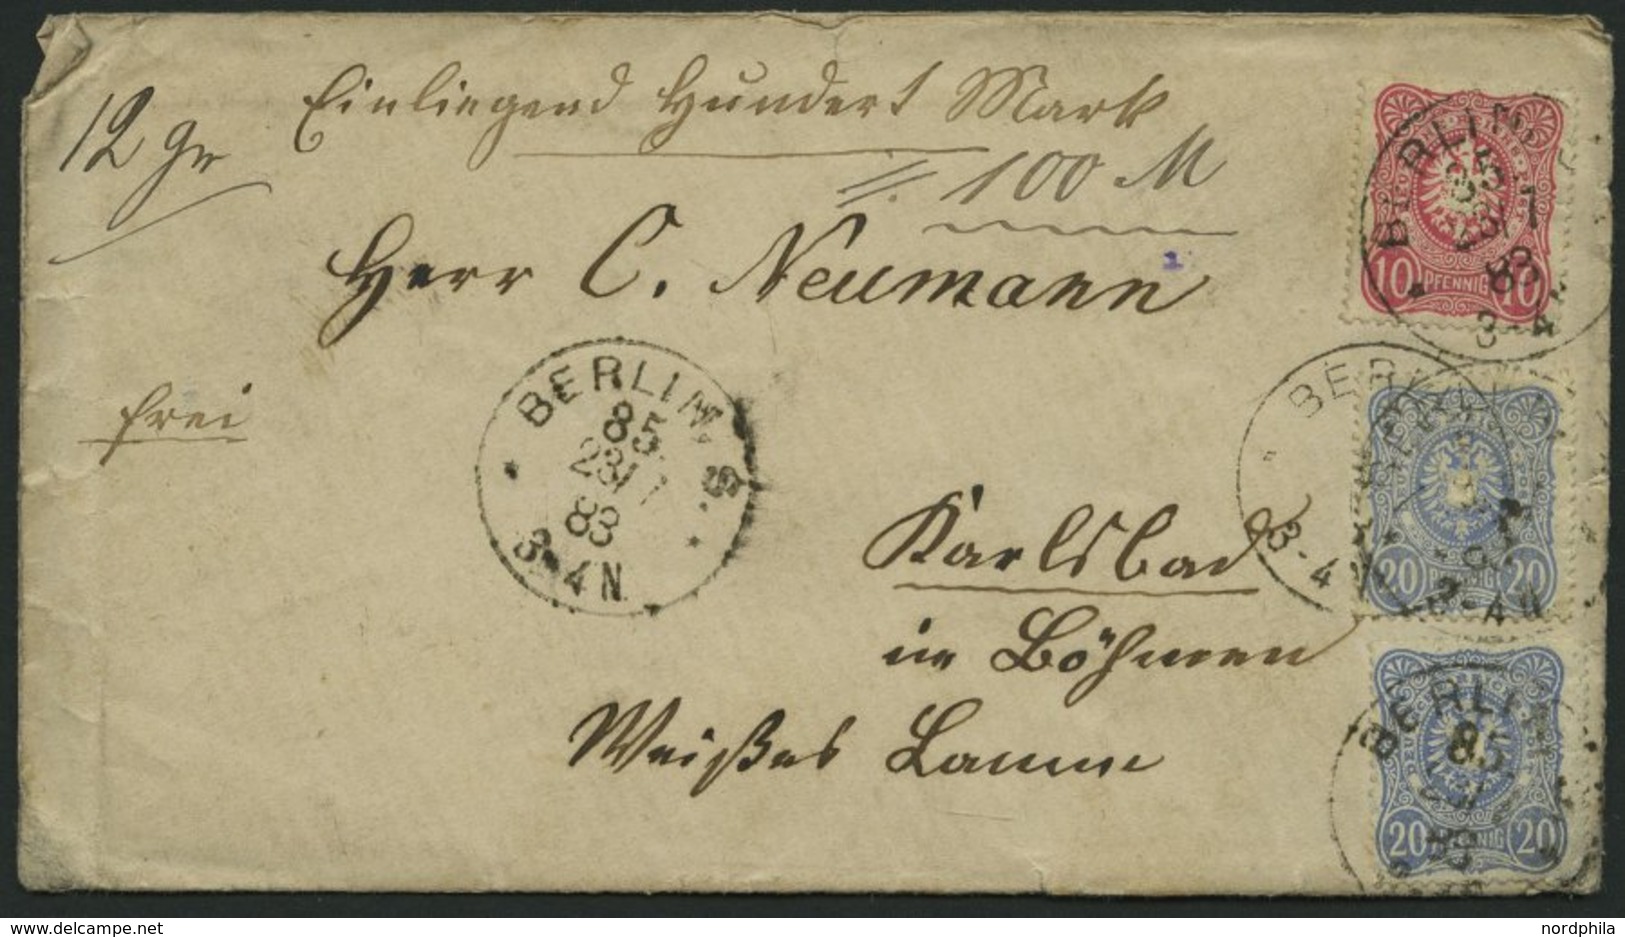 Dt. Reich 41/2 BRIEF, 1893, 10 Pf. Karmin Und 2x 20 Pf. Ultramarin Auf Geldbrief Mit Stempeln BERLIN S. 85, Feinst - Used Stamps